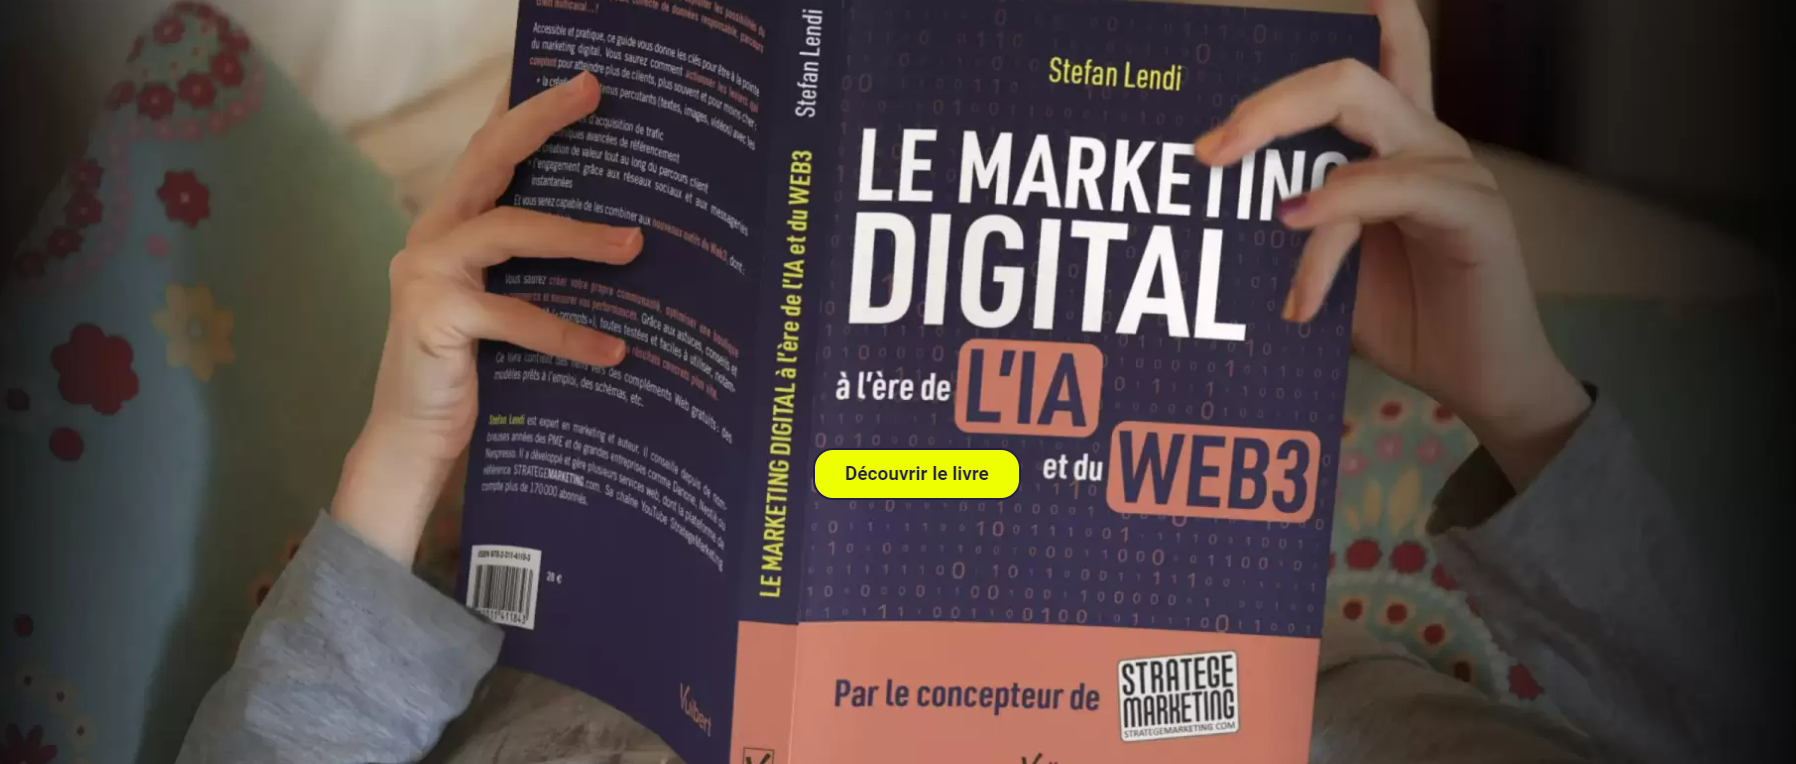 Le Marketing Digital à l'ère de l'IA et du Web 3 - Ce qu'il faut retenir du nouveau livre de Stefan Lendi 18